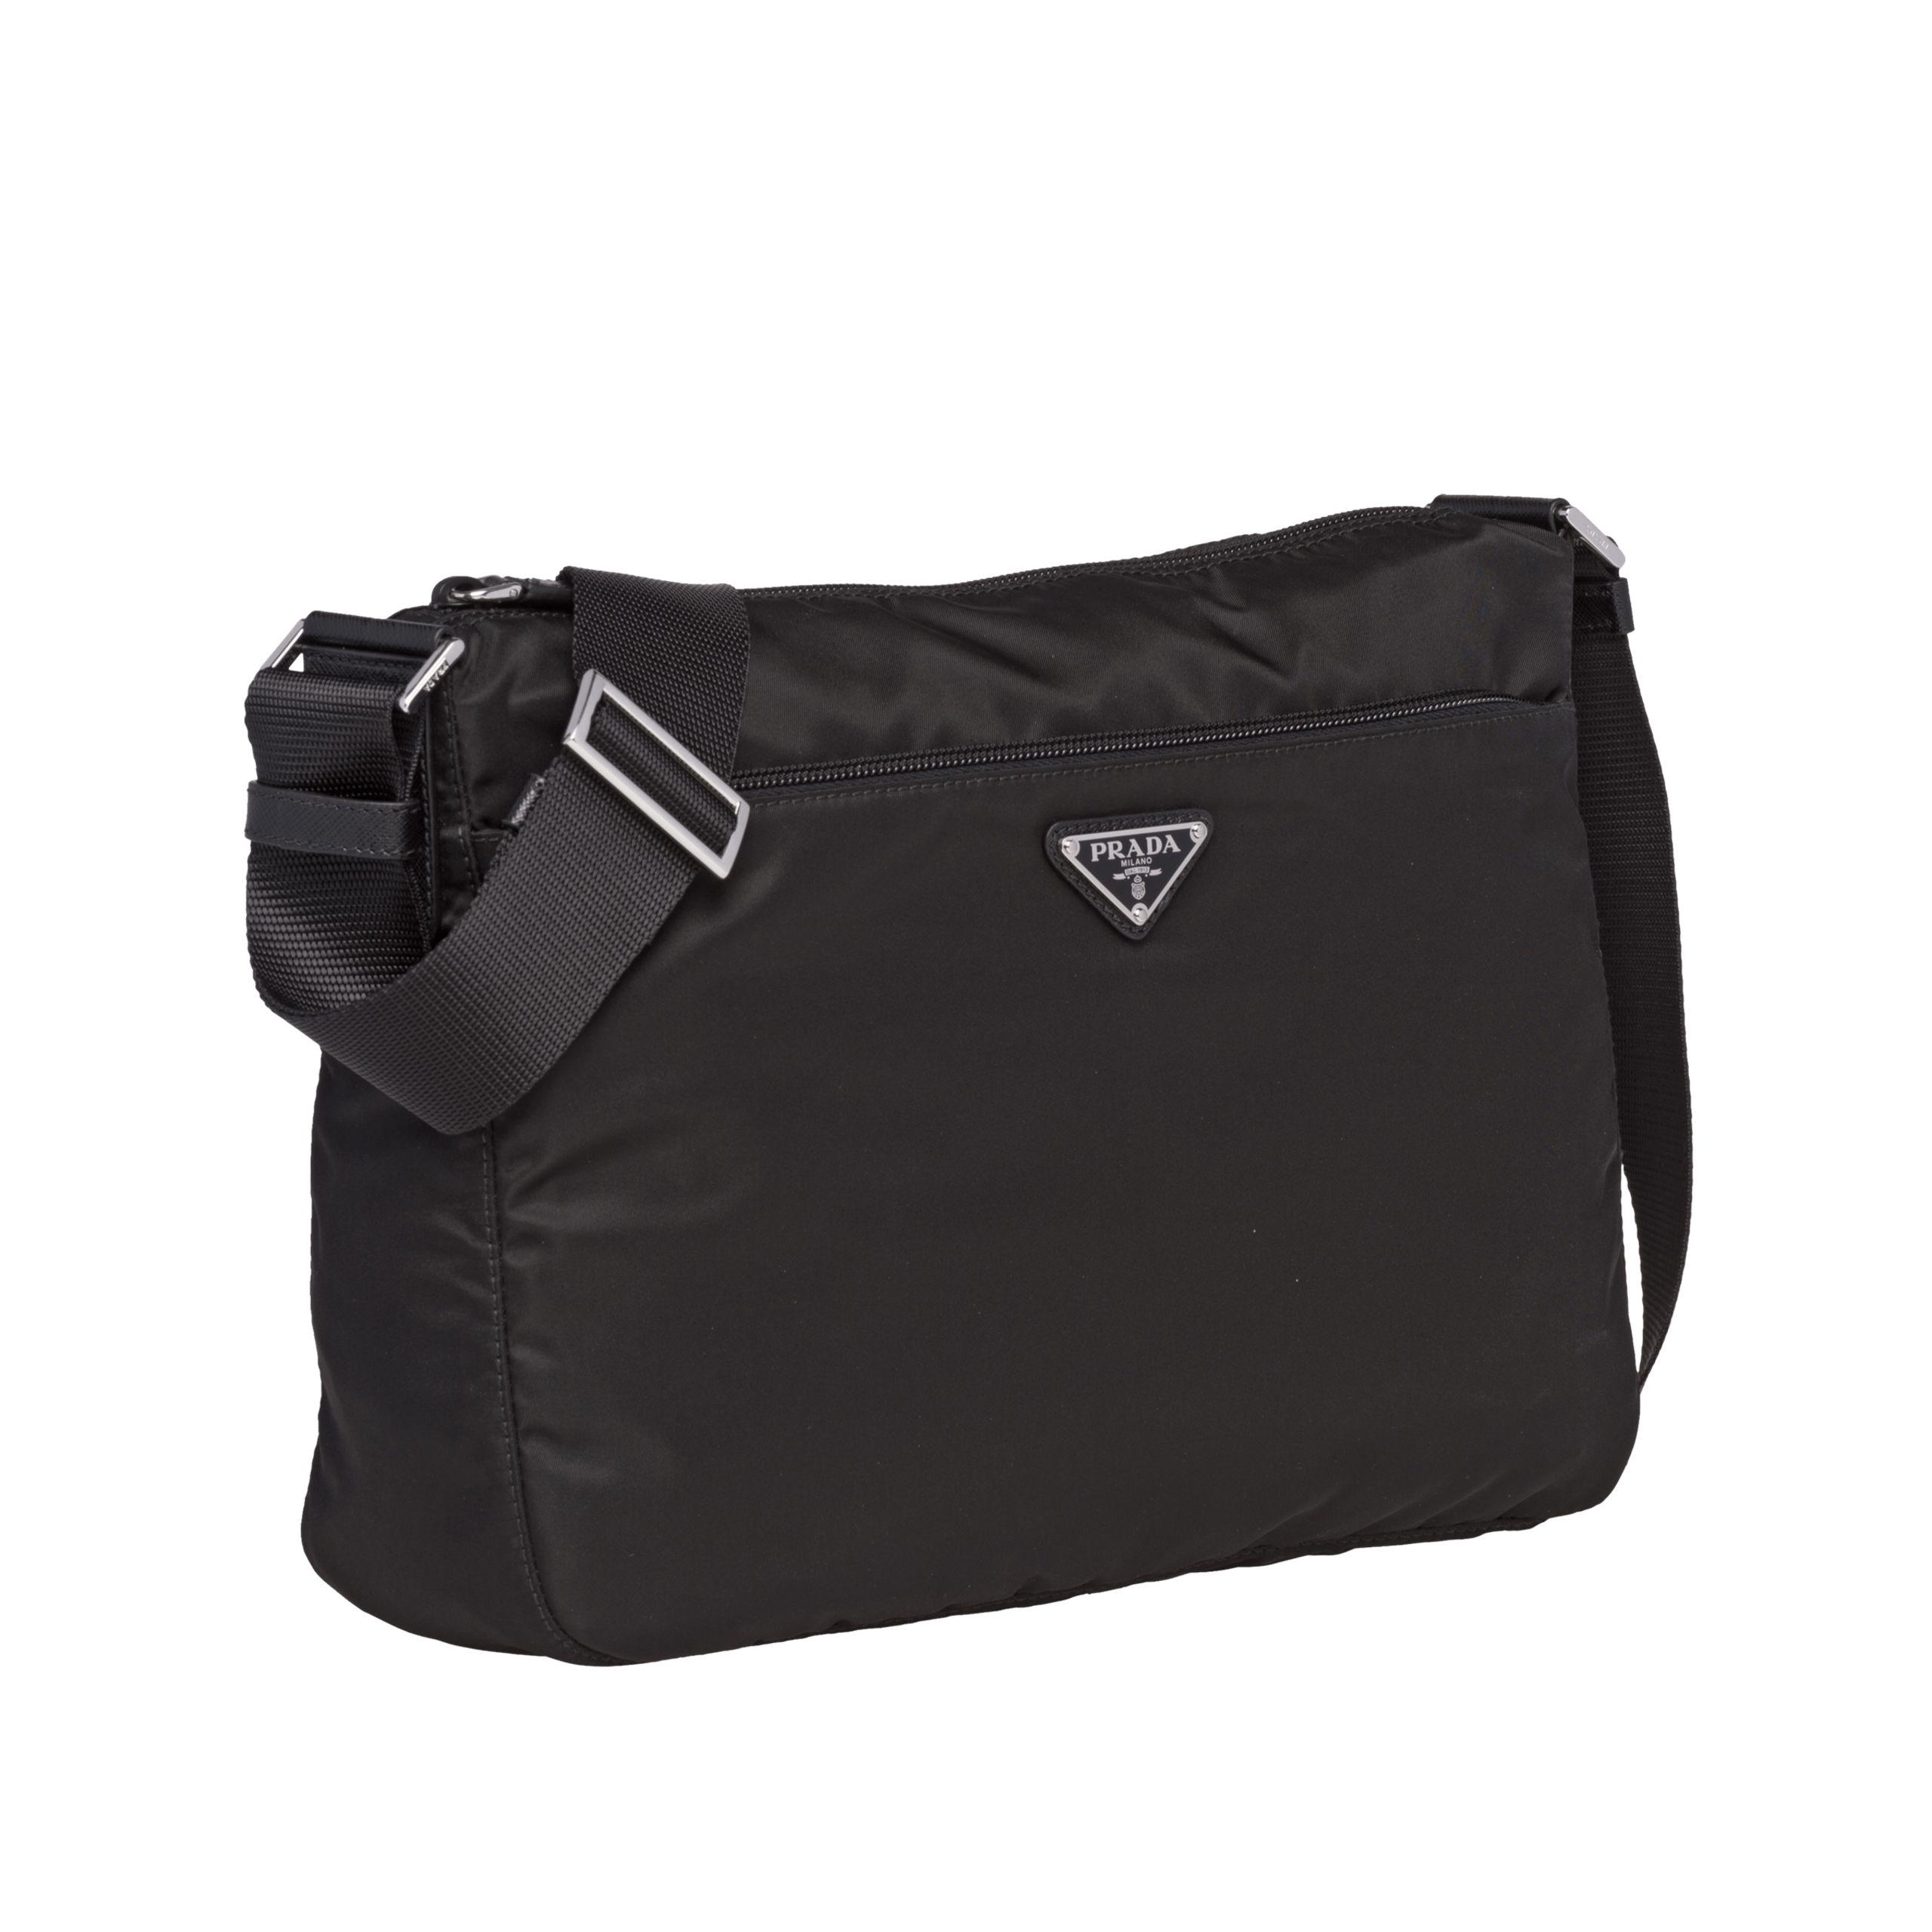 Prada Fabric Shoulder Bag in Black - Lyst